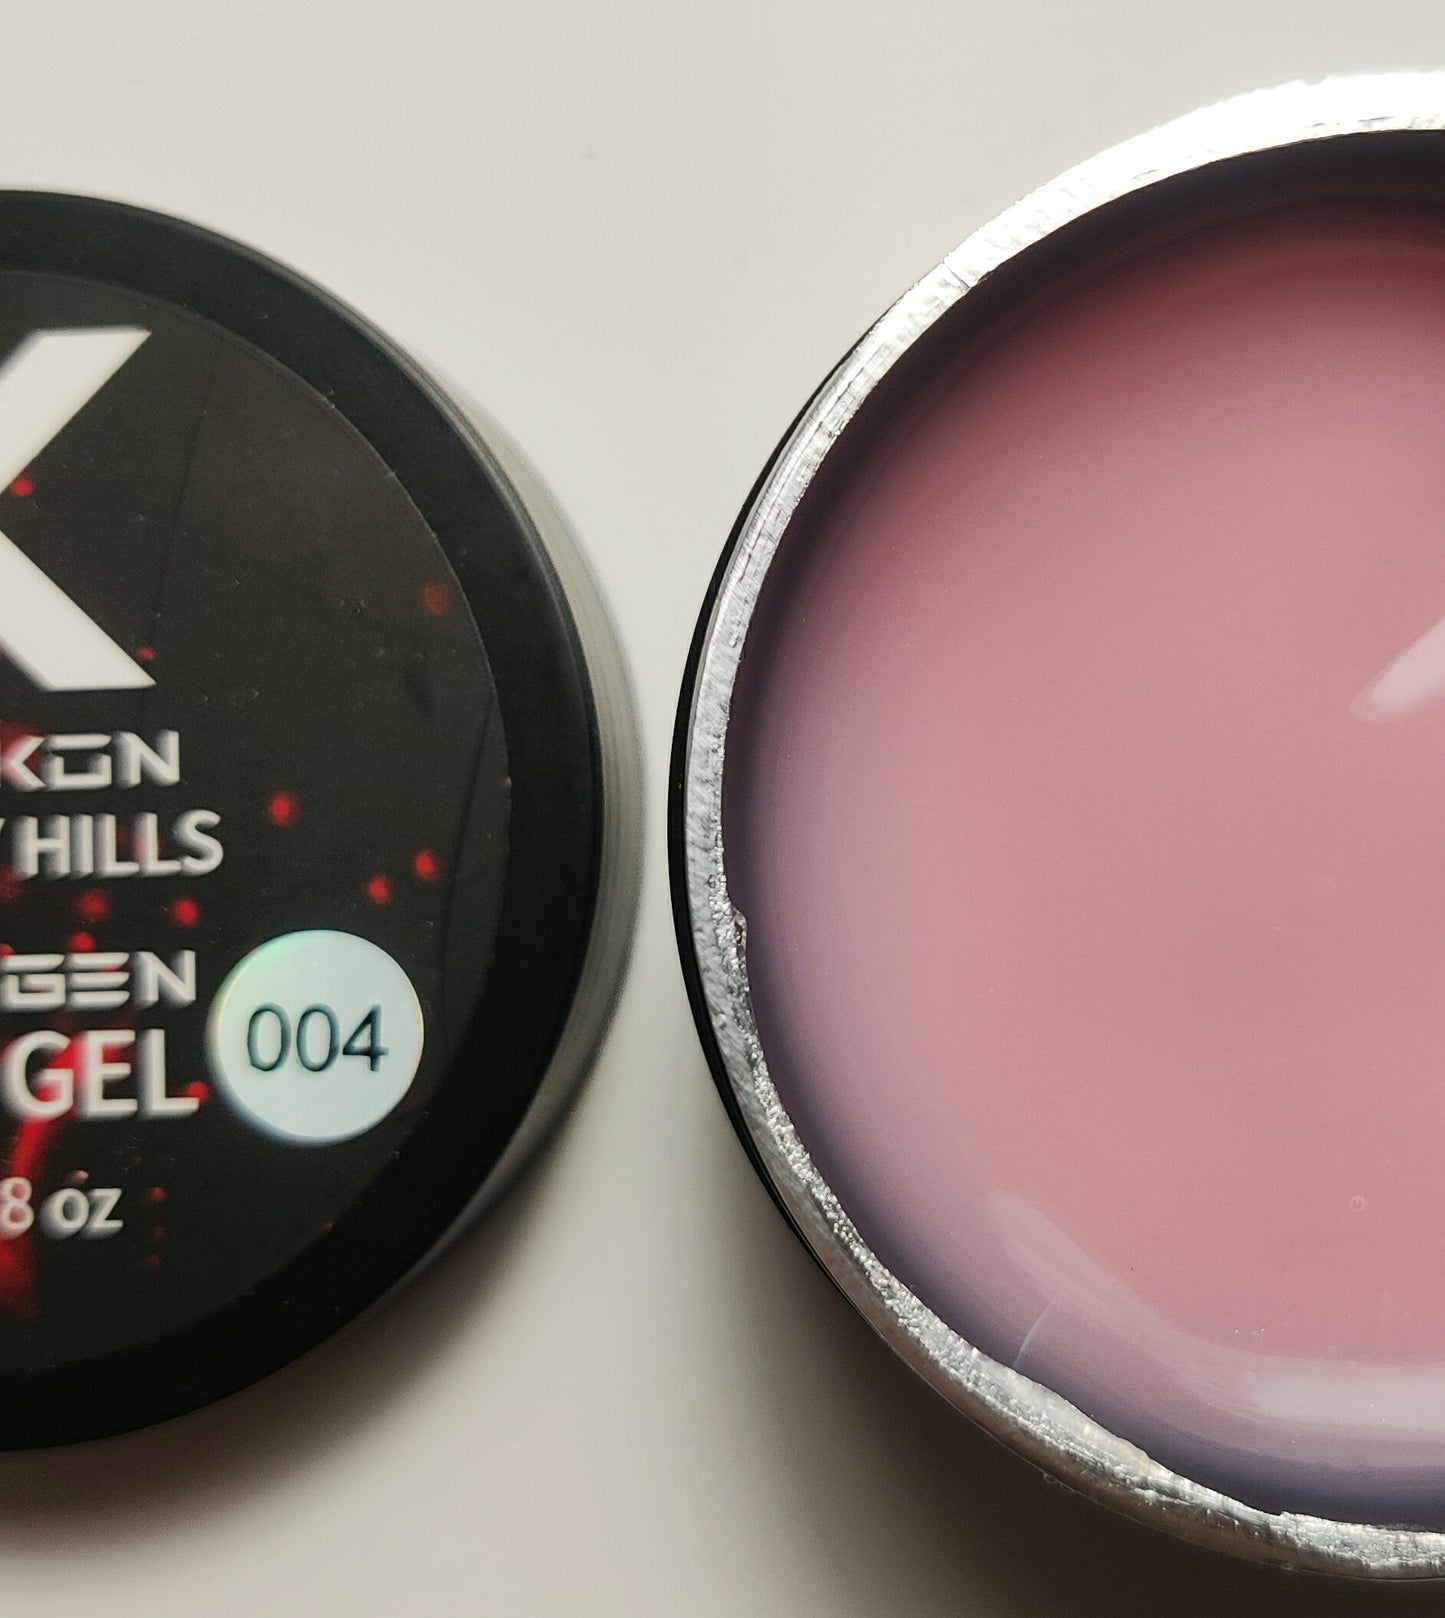 Lisa Kon Poly Gels – New Collection – New Formula of Nail Beauty